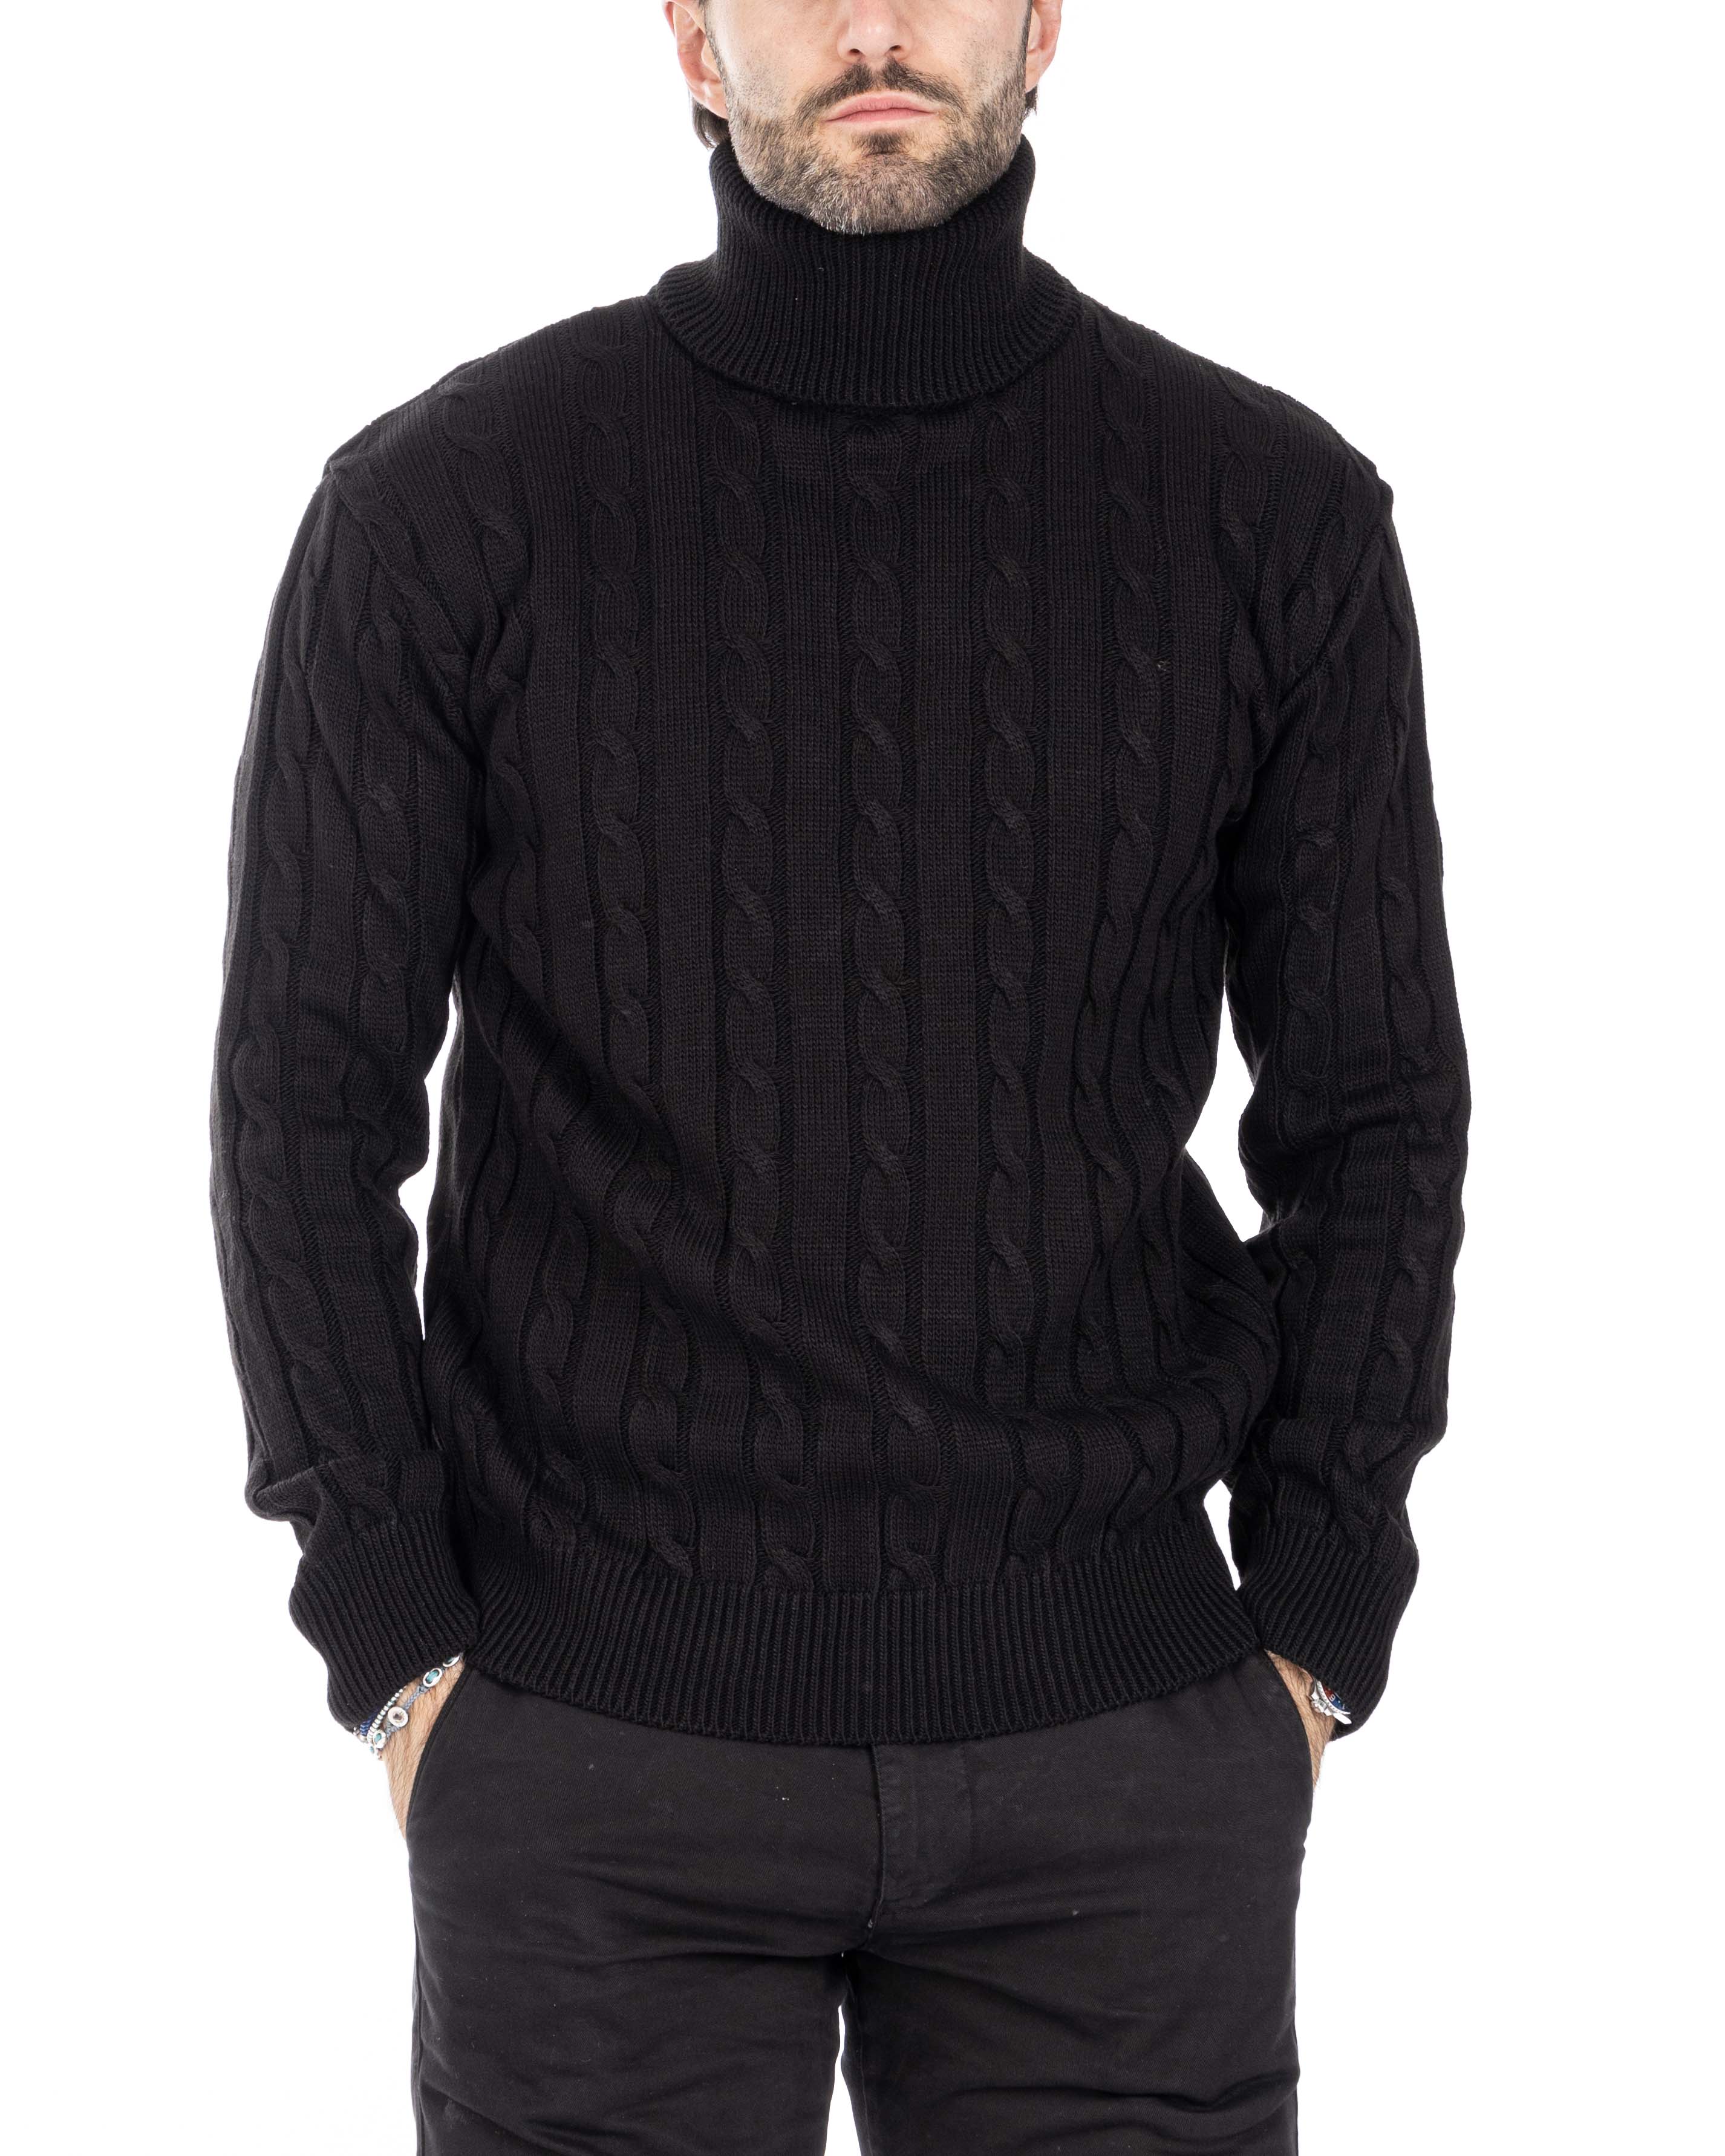 Crovie - maglione nero con trecce collo alto